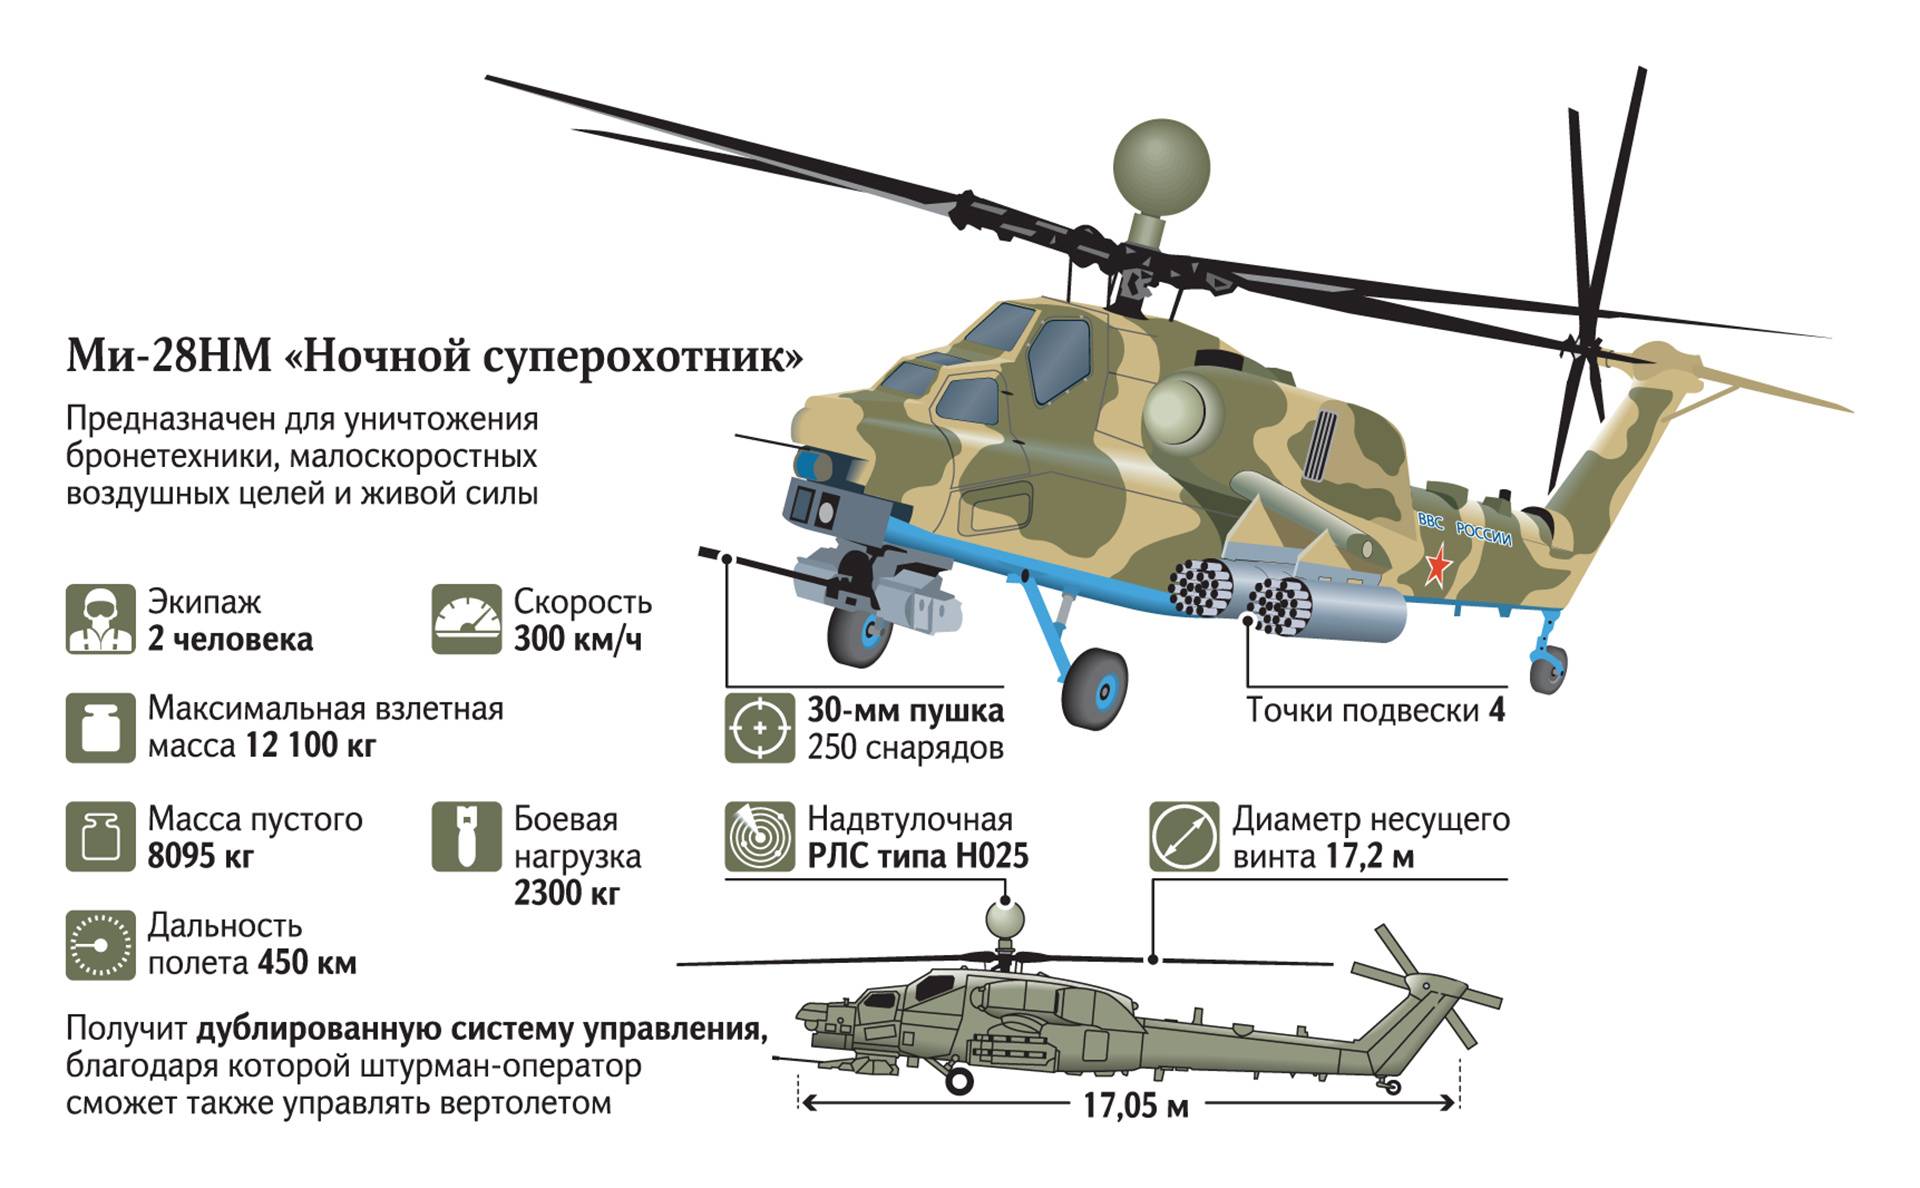 Ми-28н "ночной охотник" - российский ударный вертолет